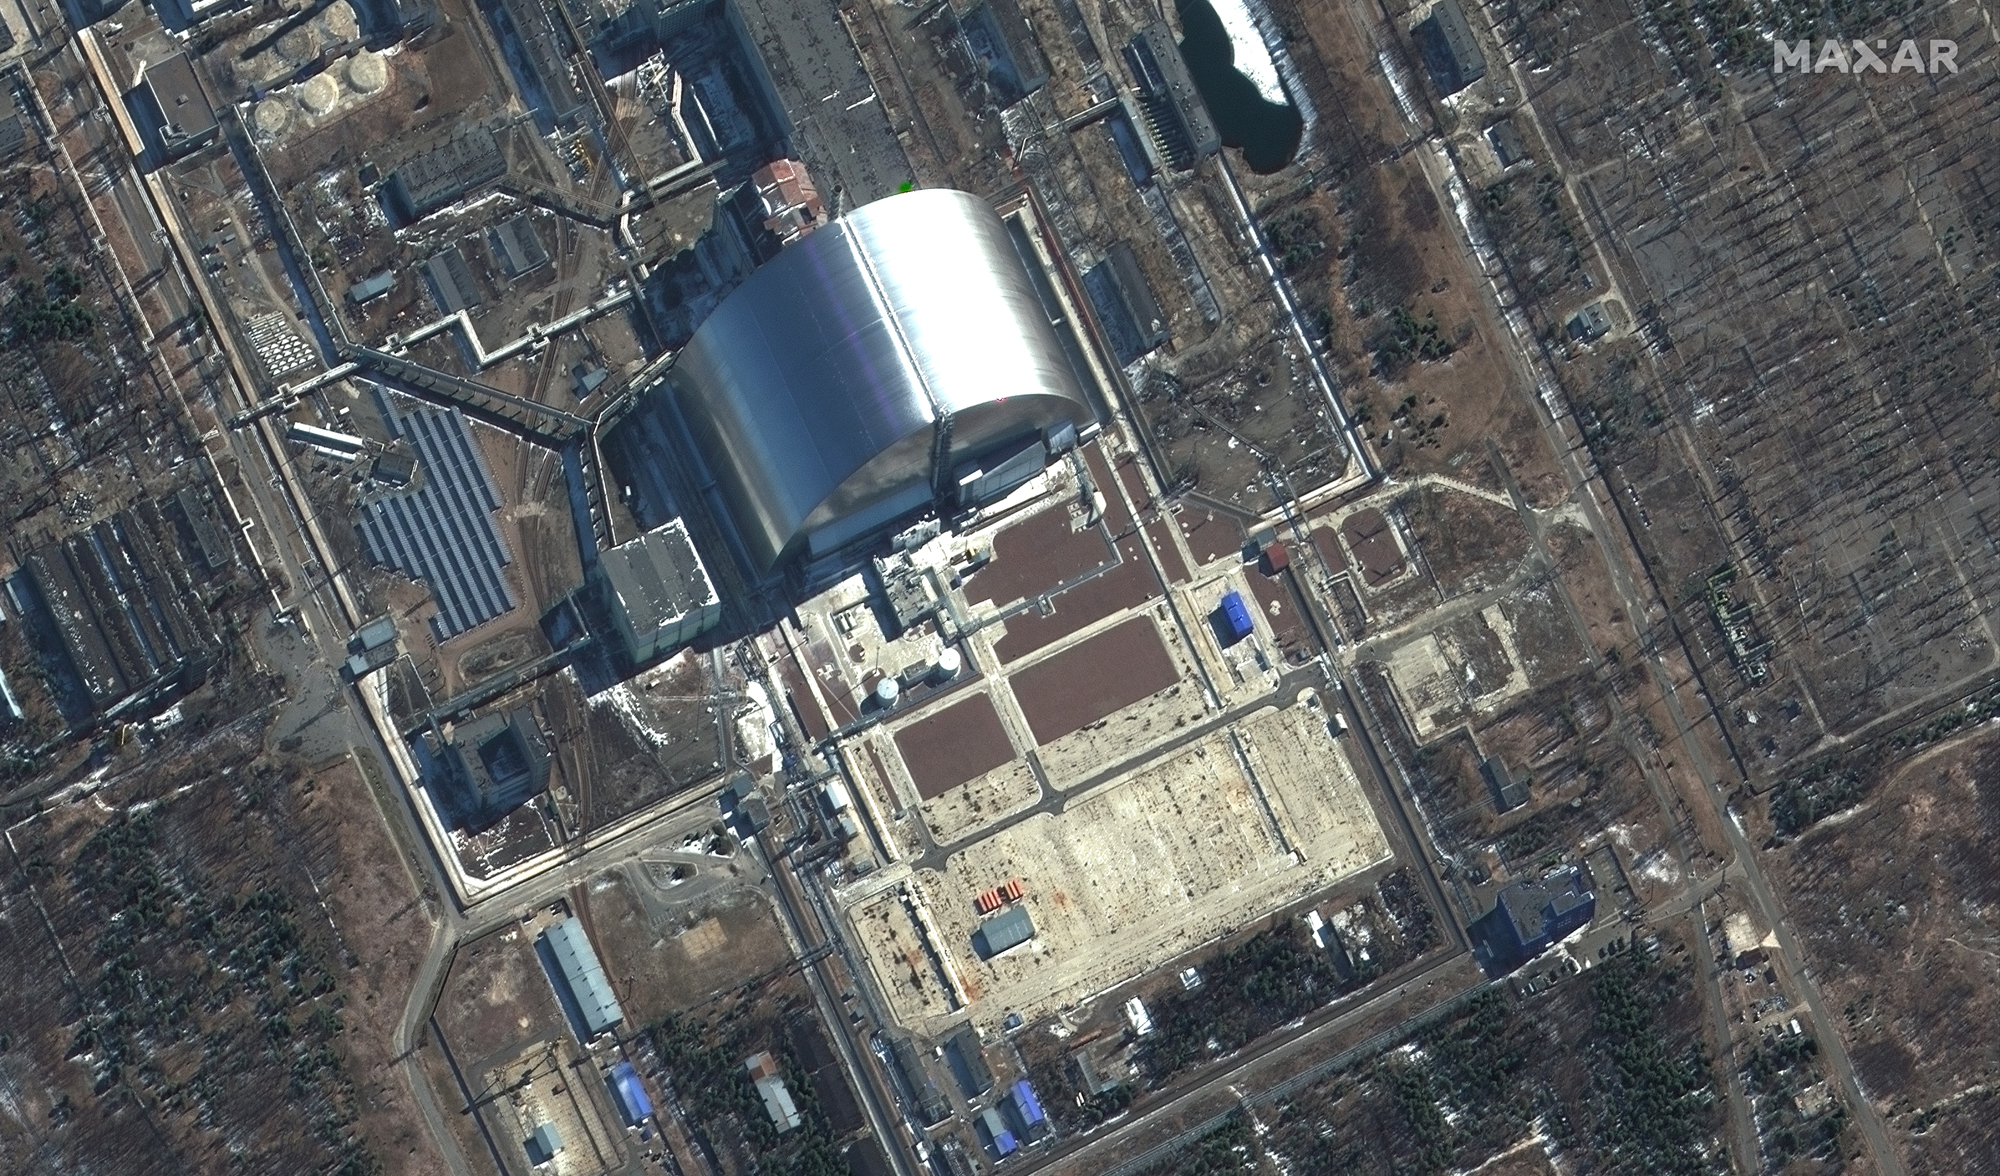 Zbliżenie na sarkofag przykrywający nieczynny reaktor jądrowy w elektrowni w Czernobu – zdjęcie z 10 marca 2022. Źródło: ©2022 Maxar Technologies